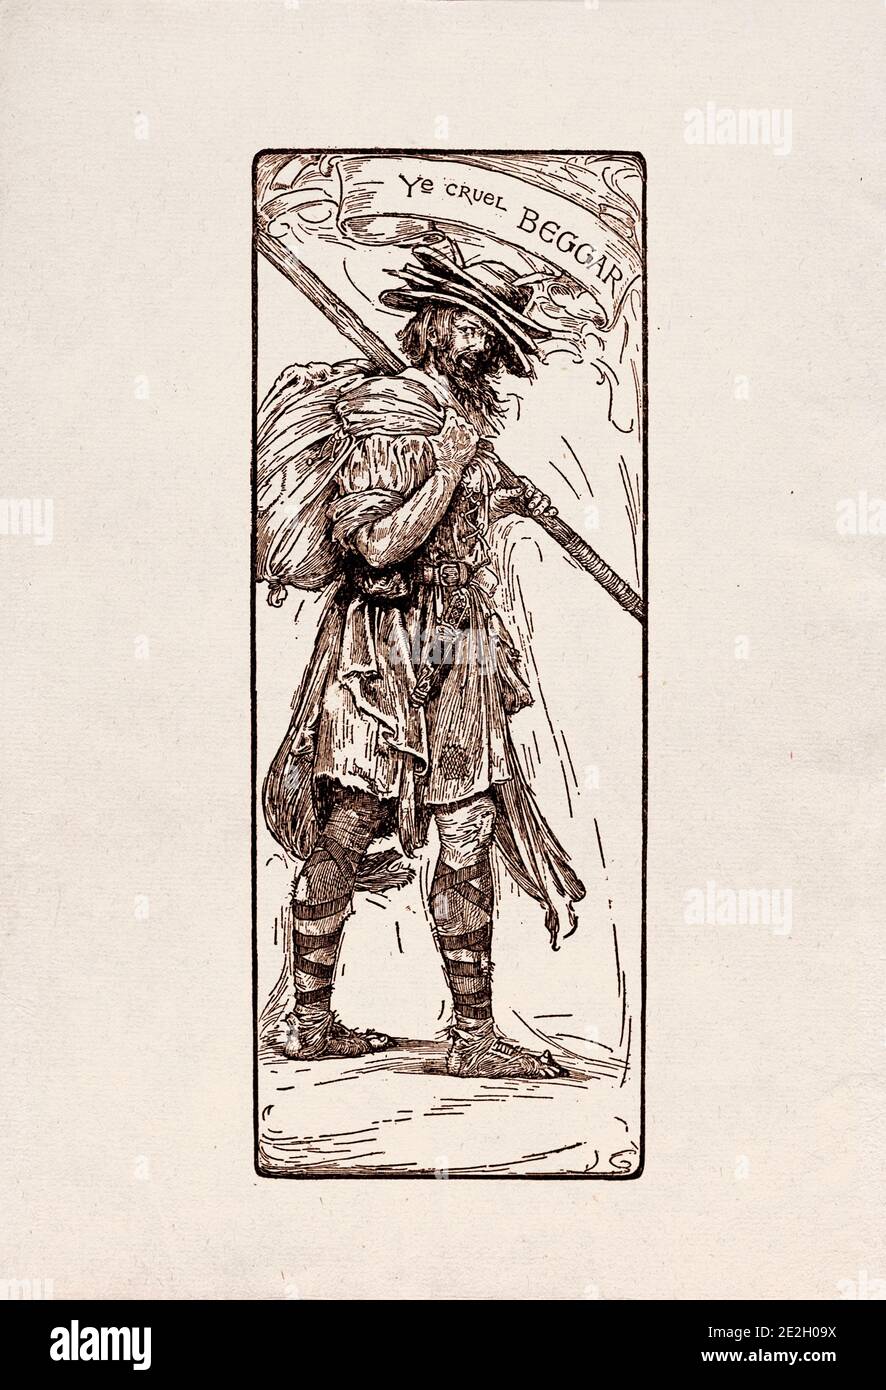 Gravure antique de personnages littéraires du folklore anglais des légendes Robin des Bois. Le mendiant cruel. Par Louis Rhead. 1912 Banque D'Images